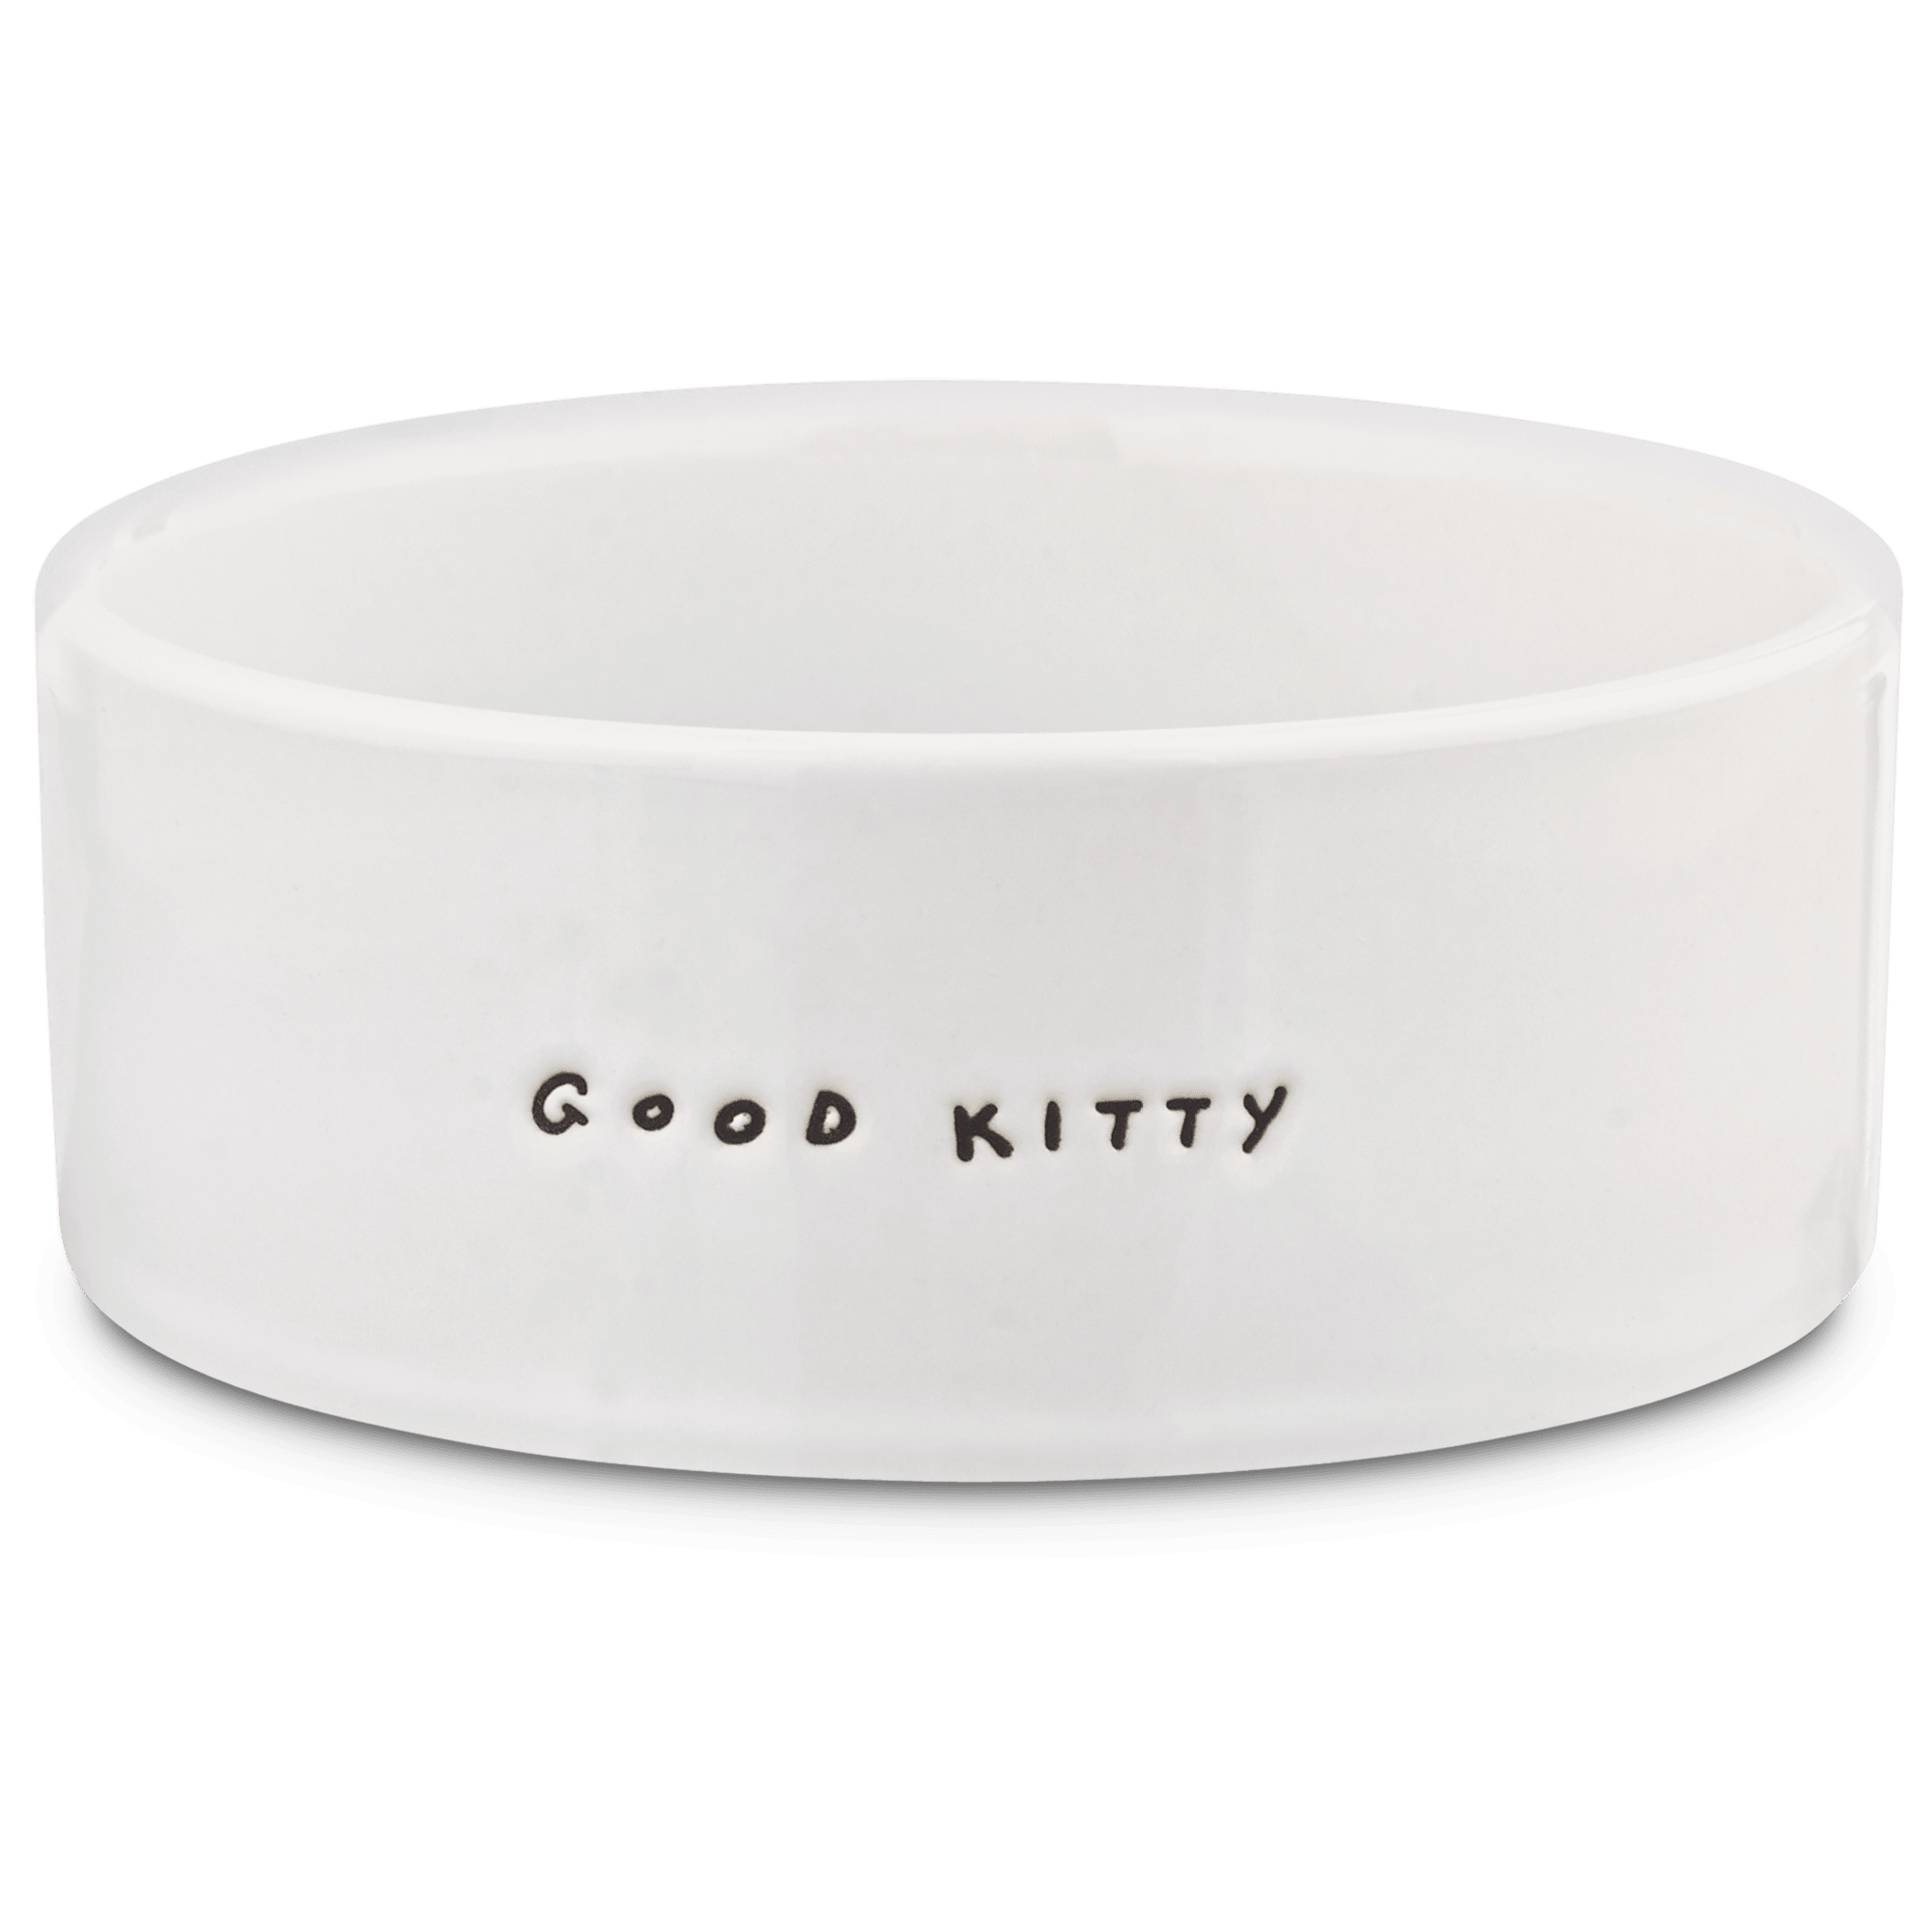 Harmony Good Kitty Ceramic Cat Bowl, 1 